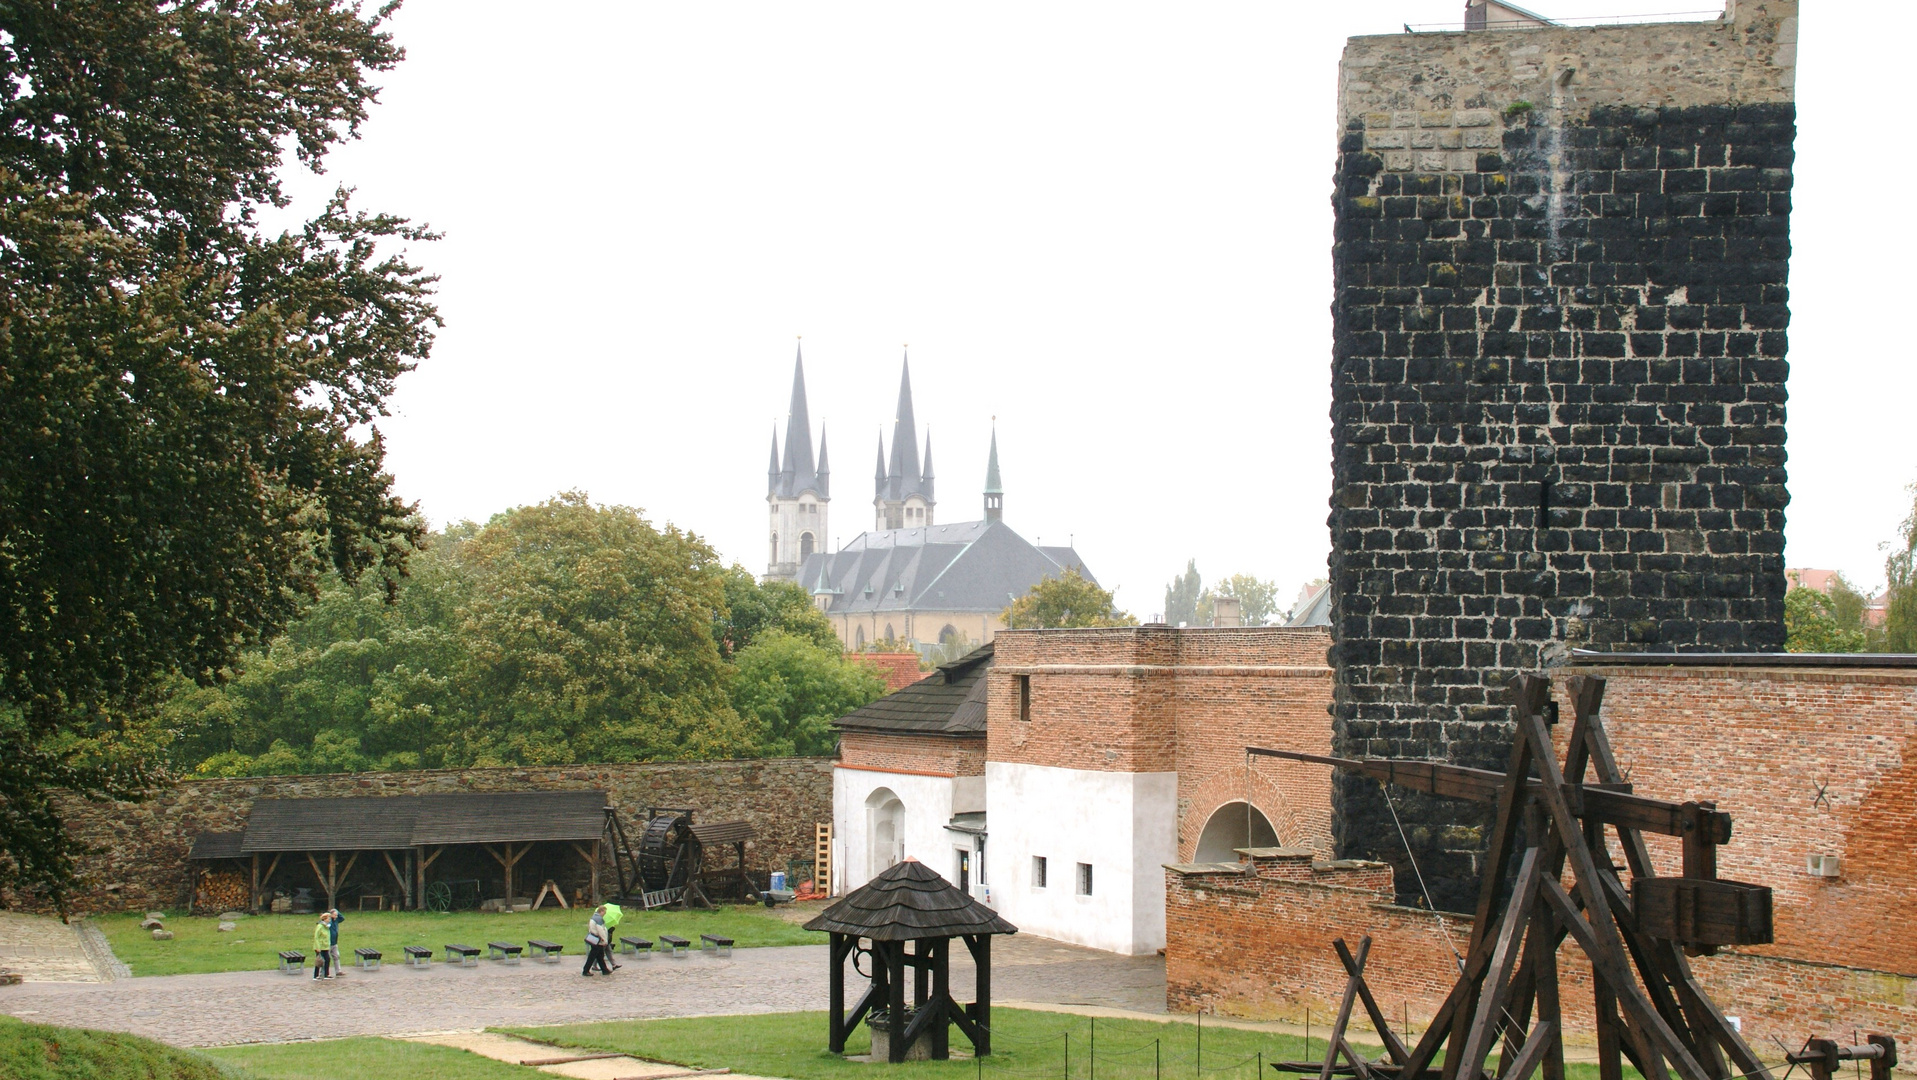 Cheb (Tschechien) - Burg Cheb - Hrad Cheb mit Blick auf St. Nikolaus  - 03.10.2019